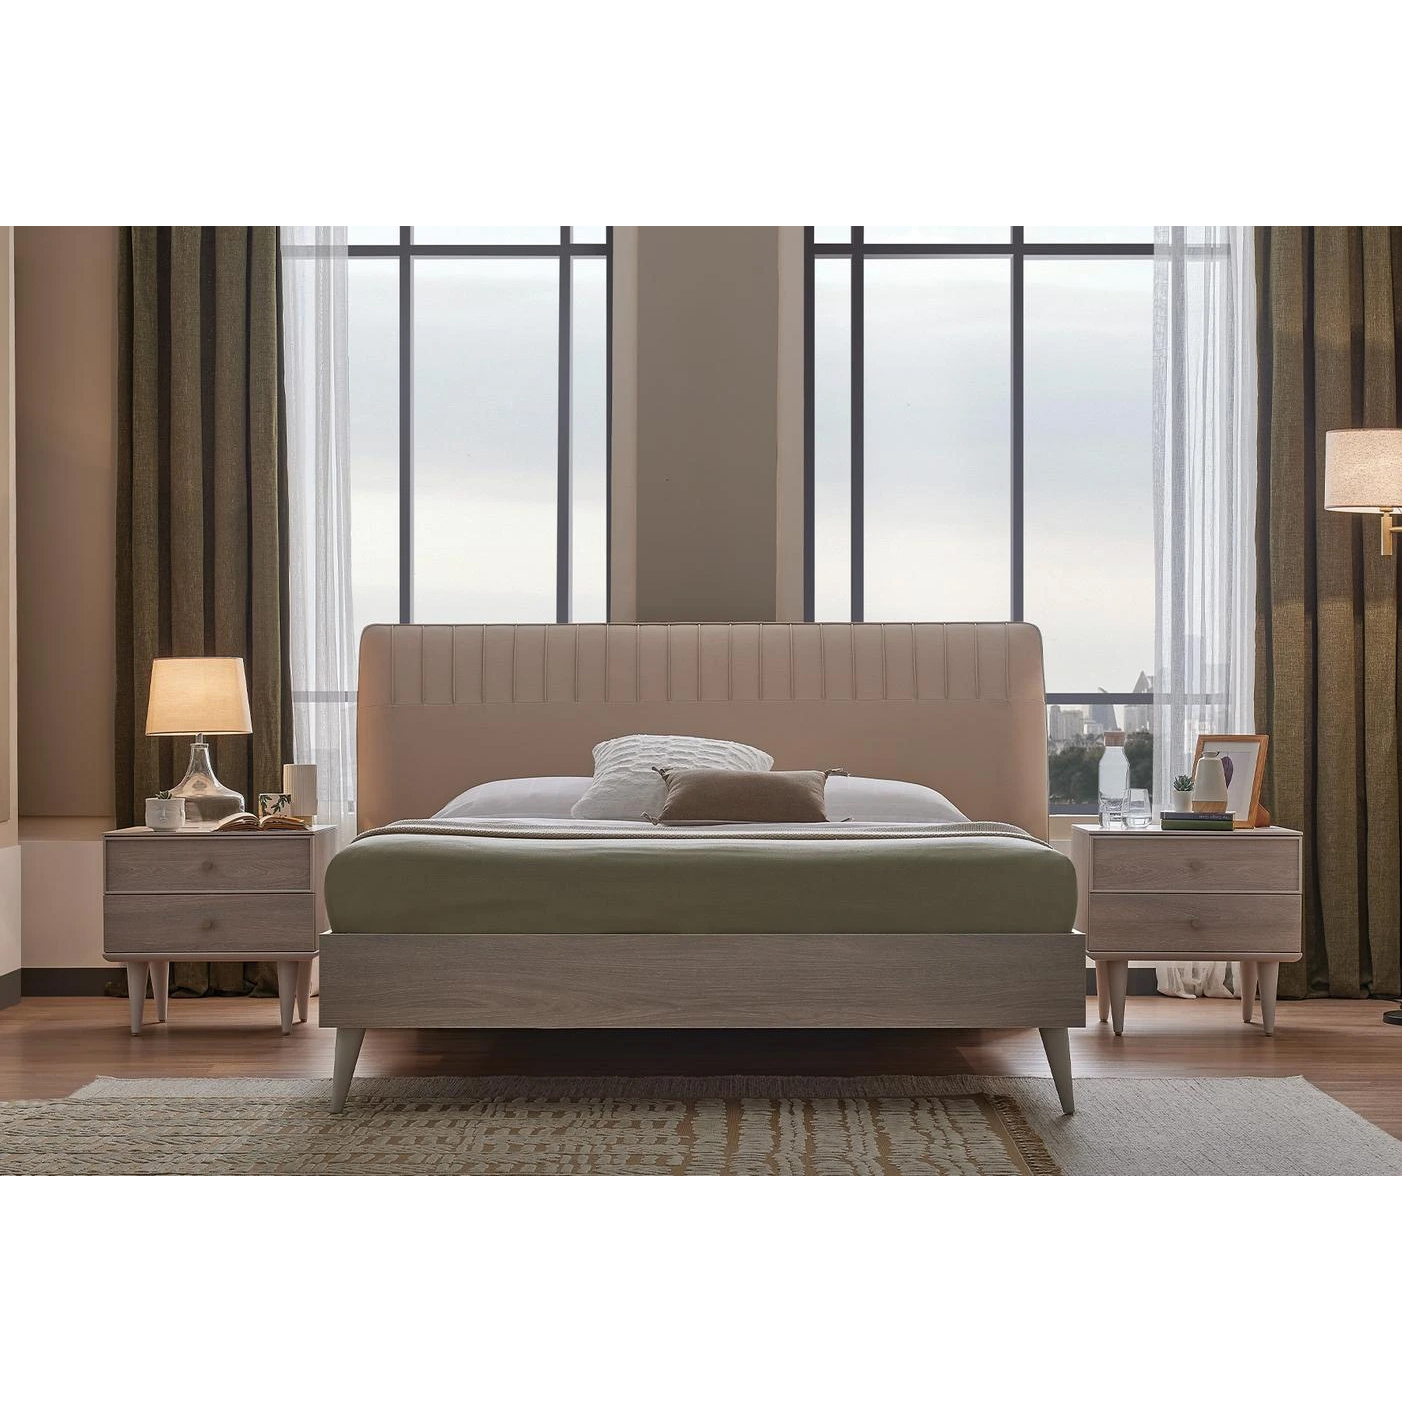 Кровать Enza Home Basel, 150х200 см, изголовье- кремовый 3001-K1-52102 (EH59523+EH59489)EH59523+EH59489